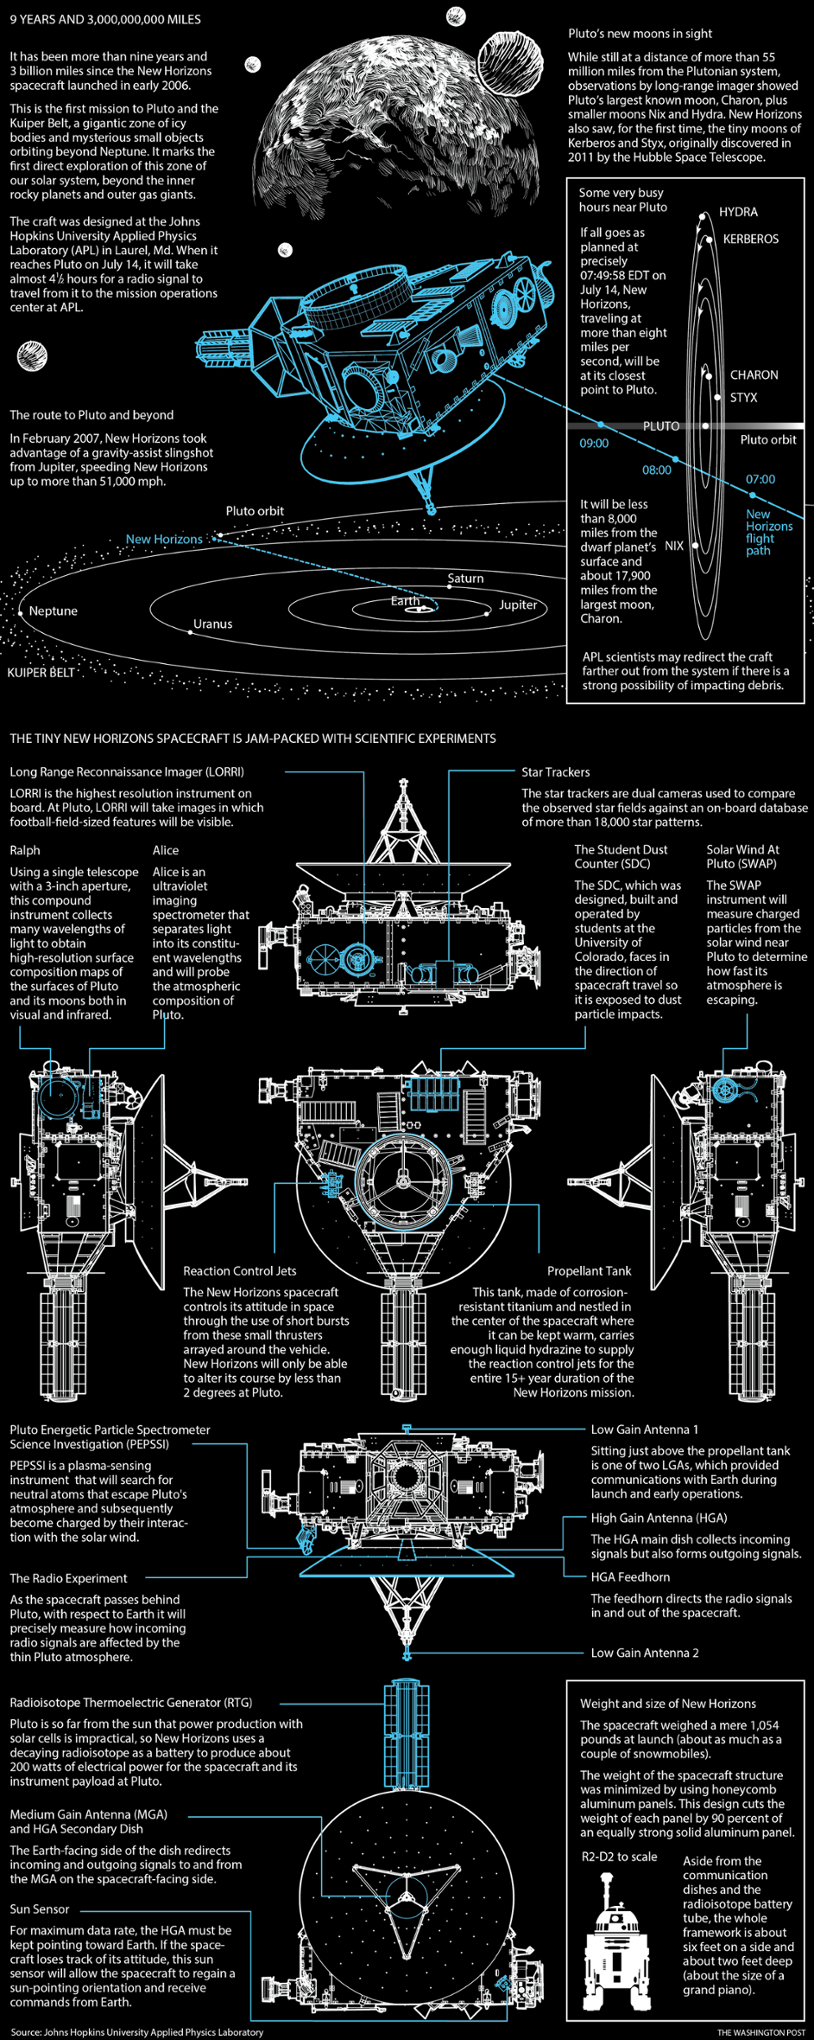 Los detalles de la sonda New Horizons y su misión. Crédito: Richard Johnson/Washington Post